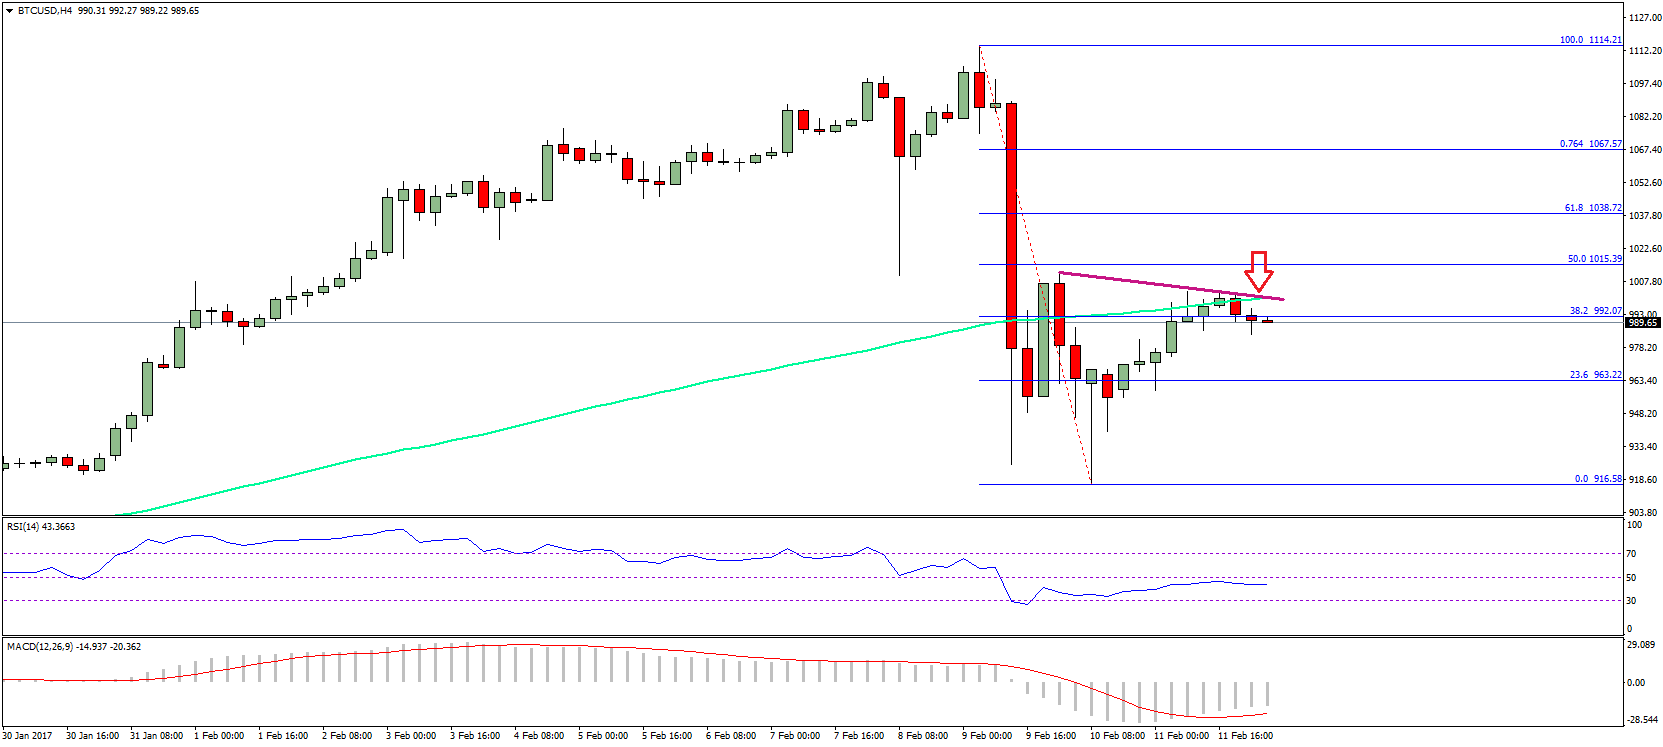 Bitcoin Price Weekly Analysis BTC USD